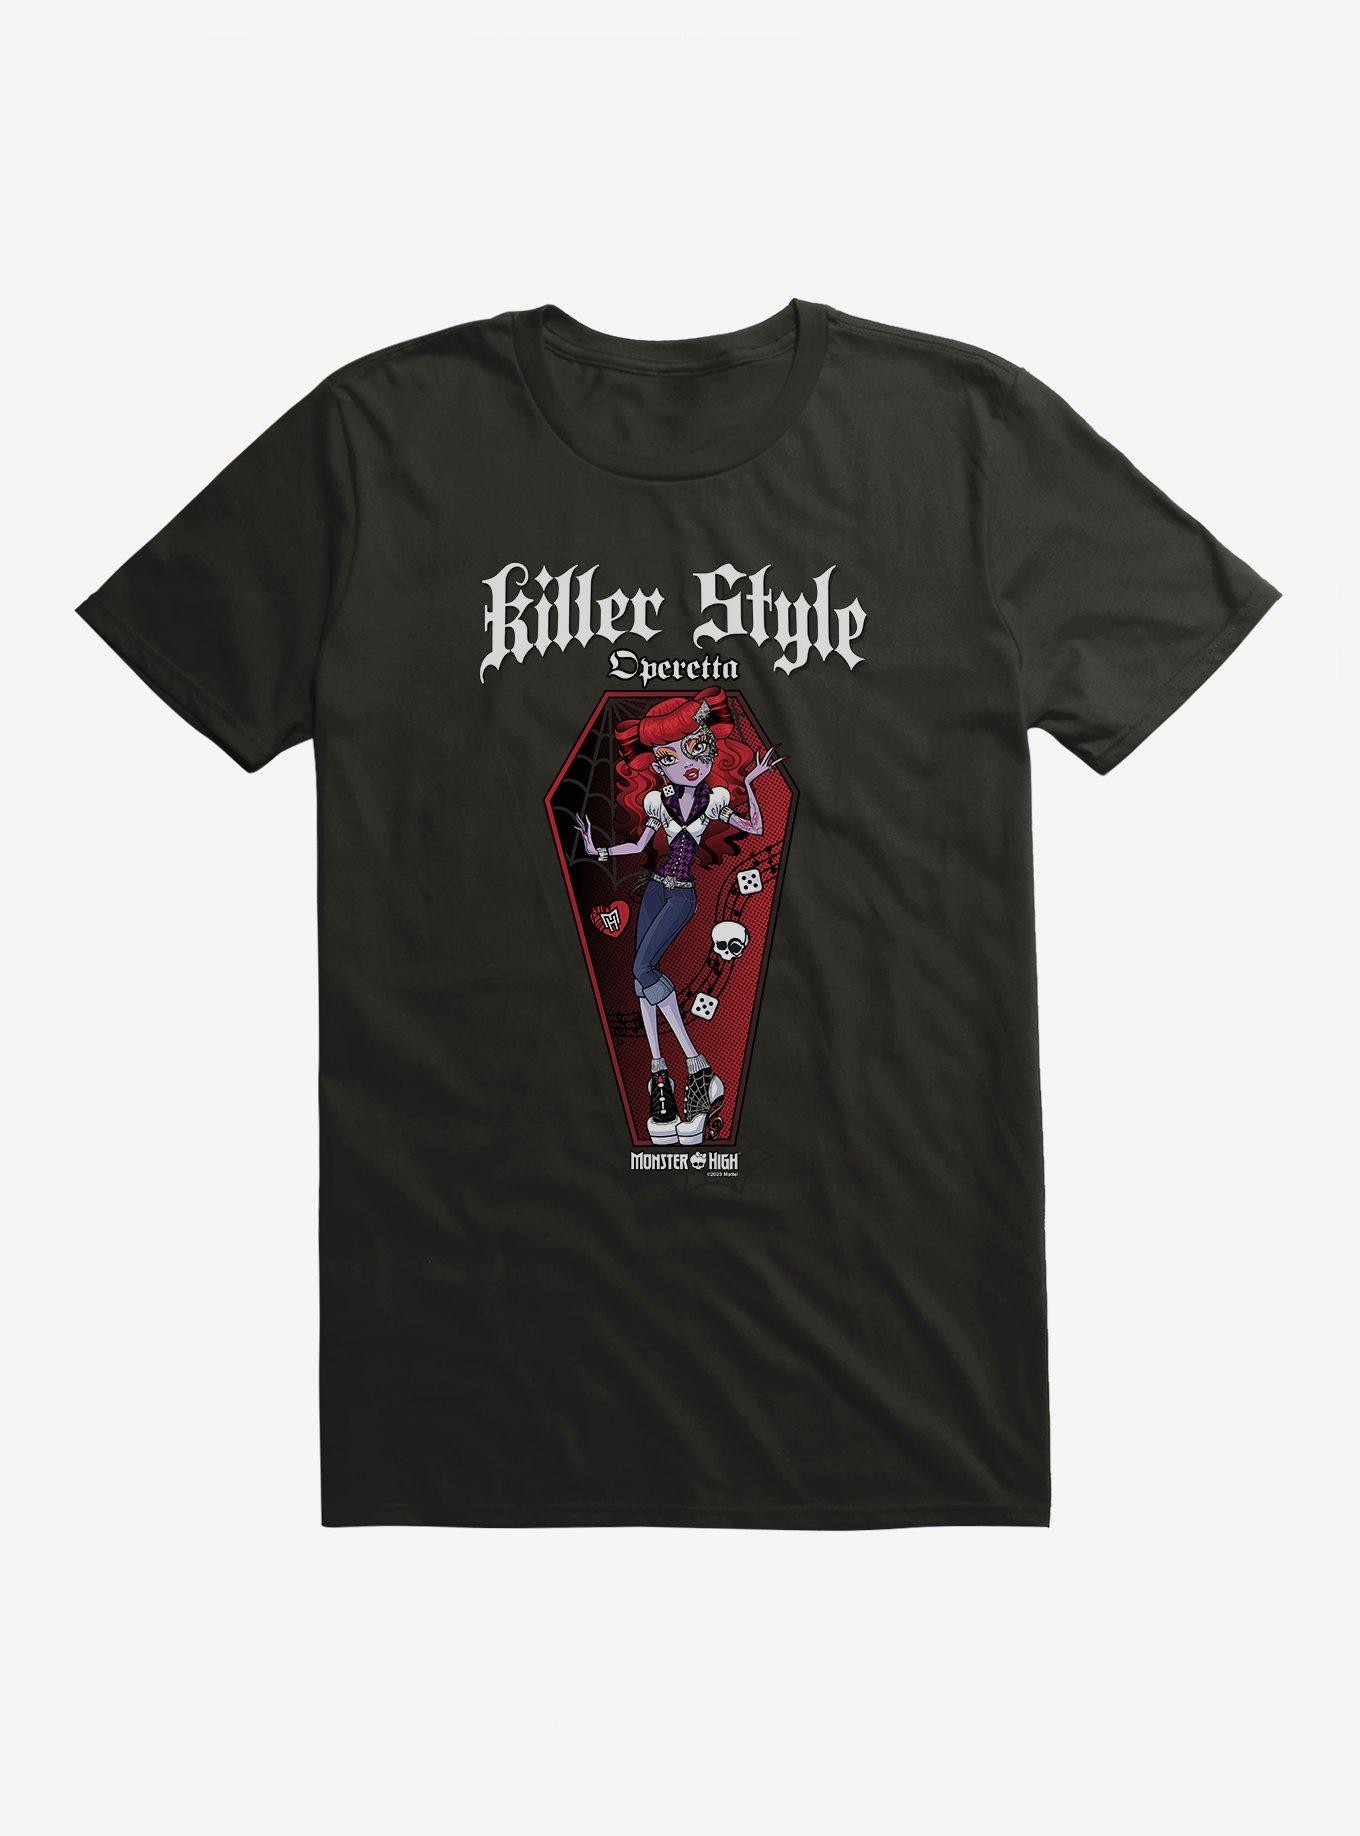 Monster High Operetta Killer Style T-Shirt, BLACK, hi-res